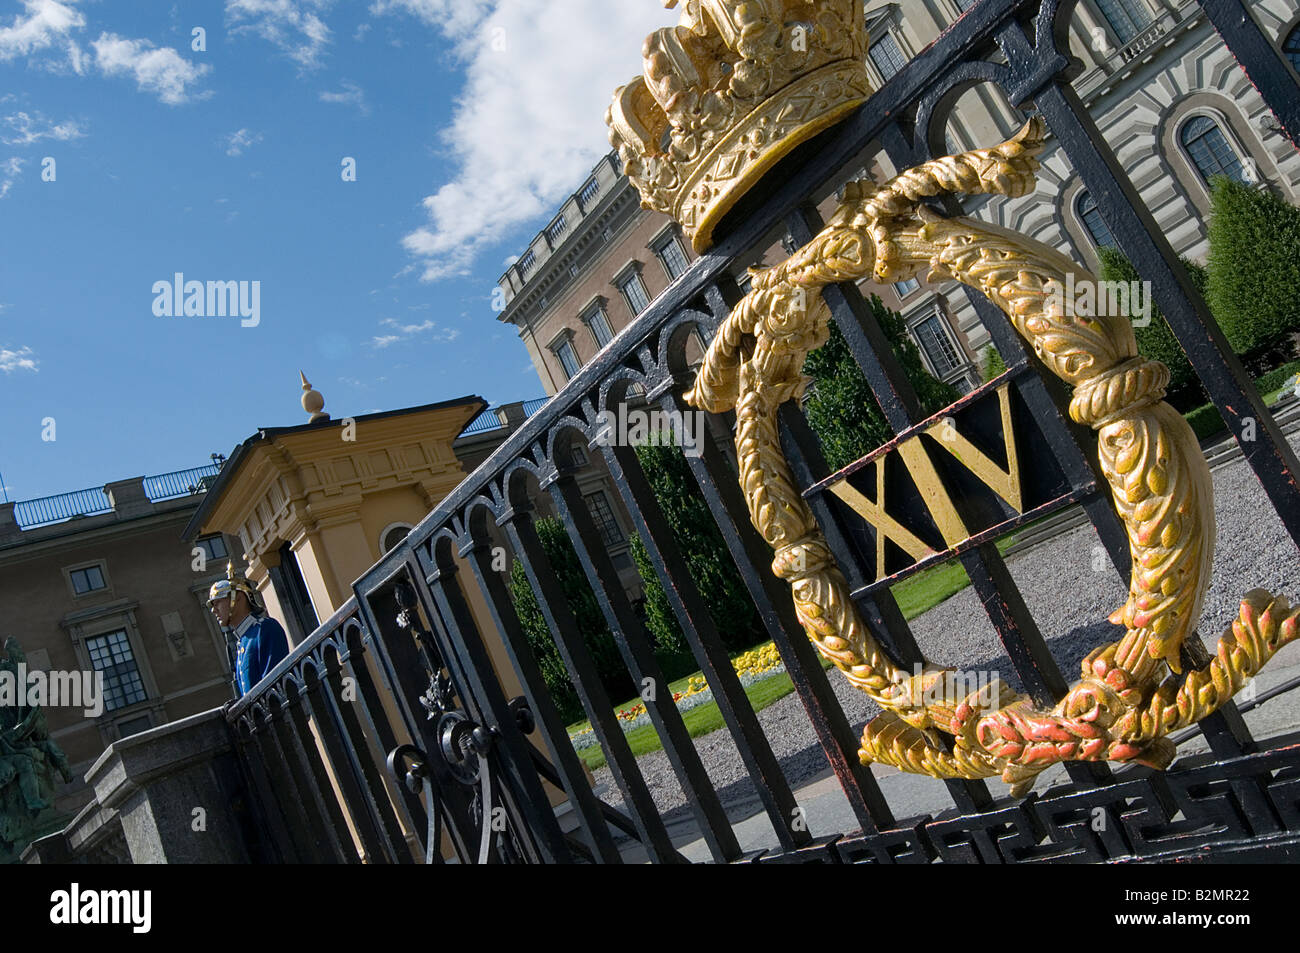 Palais de Stockholm Stockholms slott famille royale Suédoise Suède monarchie résidence officielle du monarque roi reine garde royale ceremon Banque D'Images